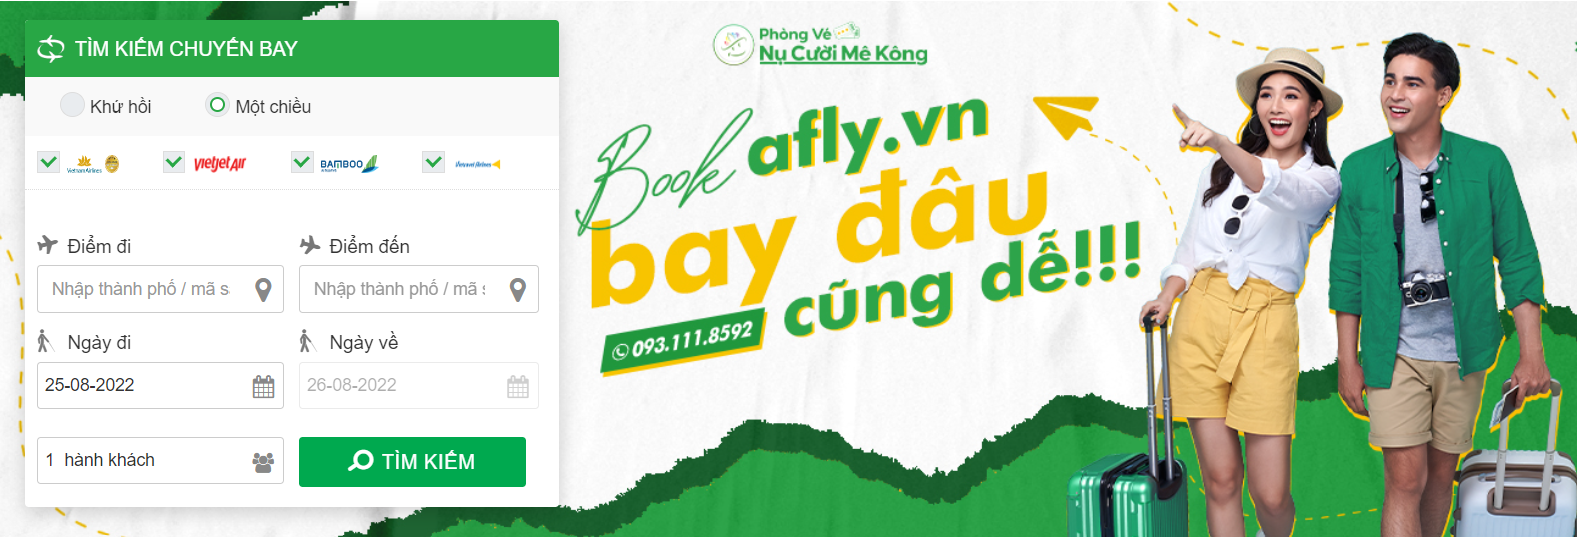 Săn vé máy bay giá rẻ chặng Nha Trang - Sài Gòn tại Afly.vn